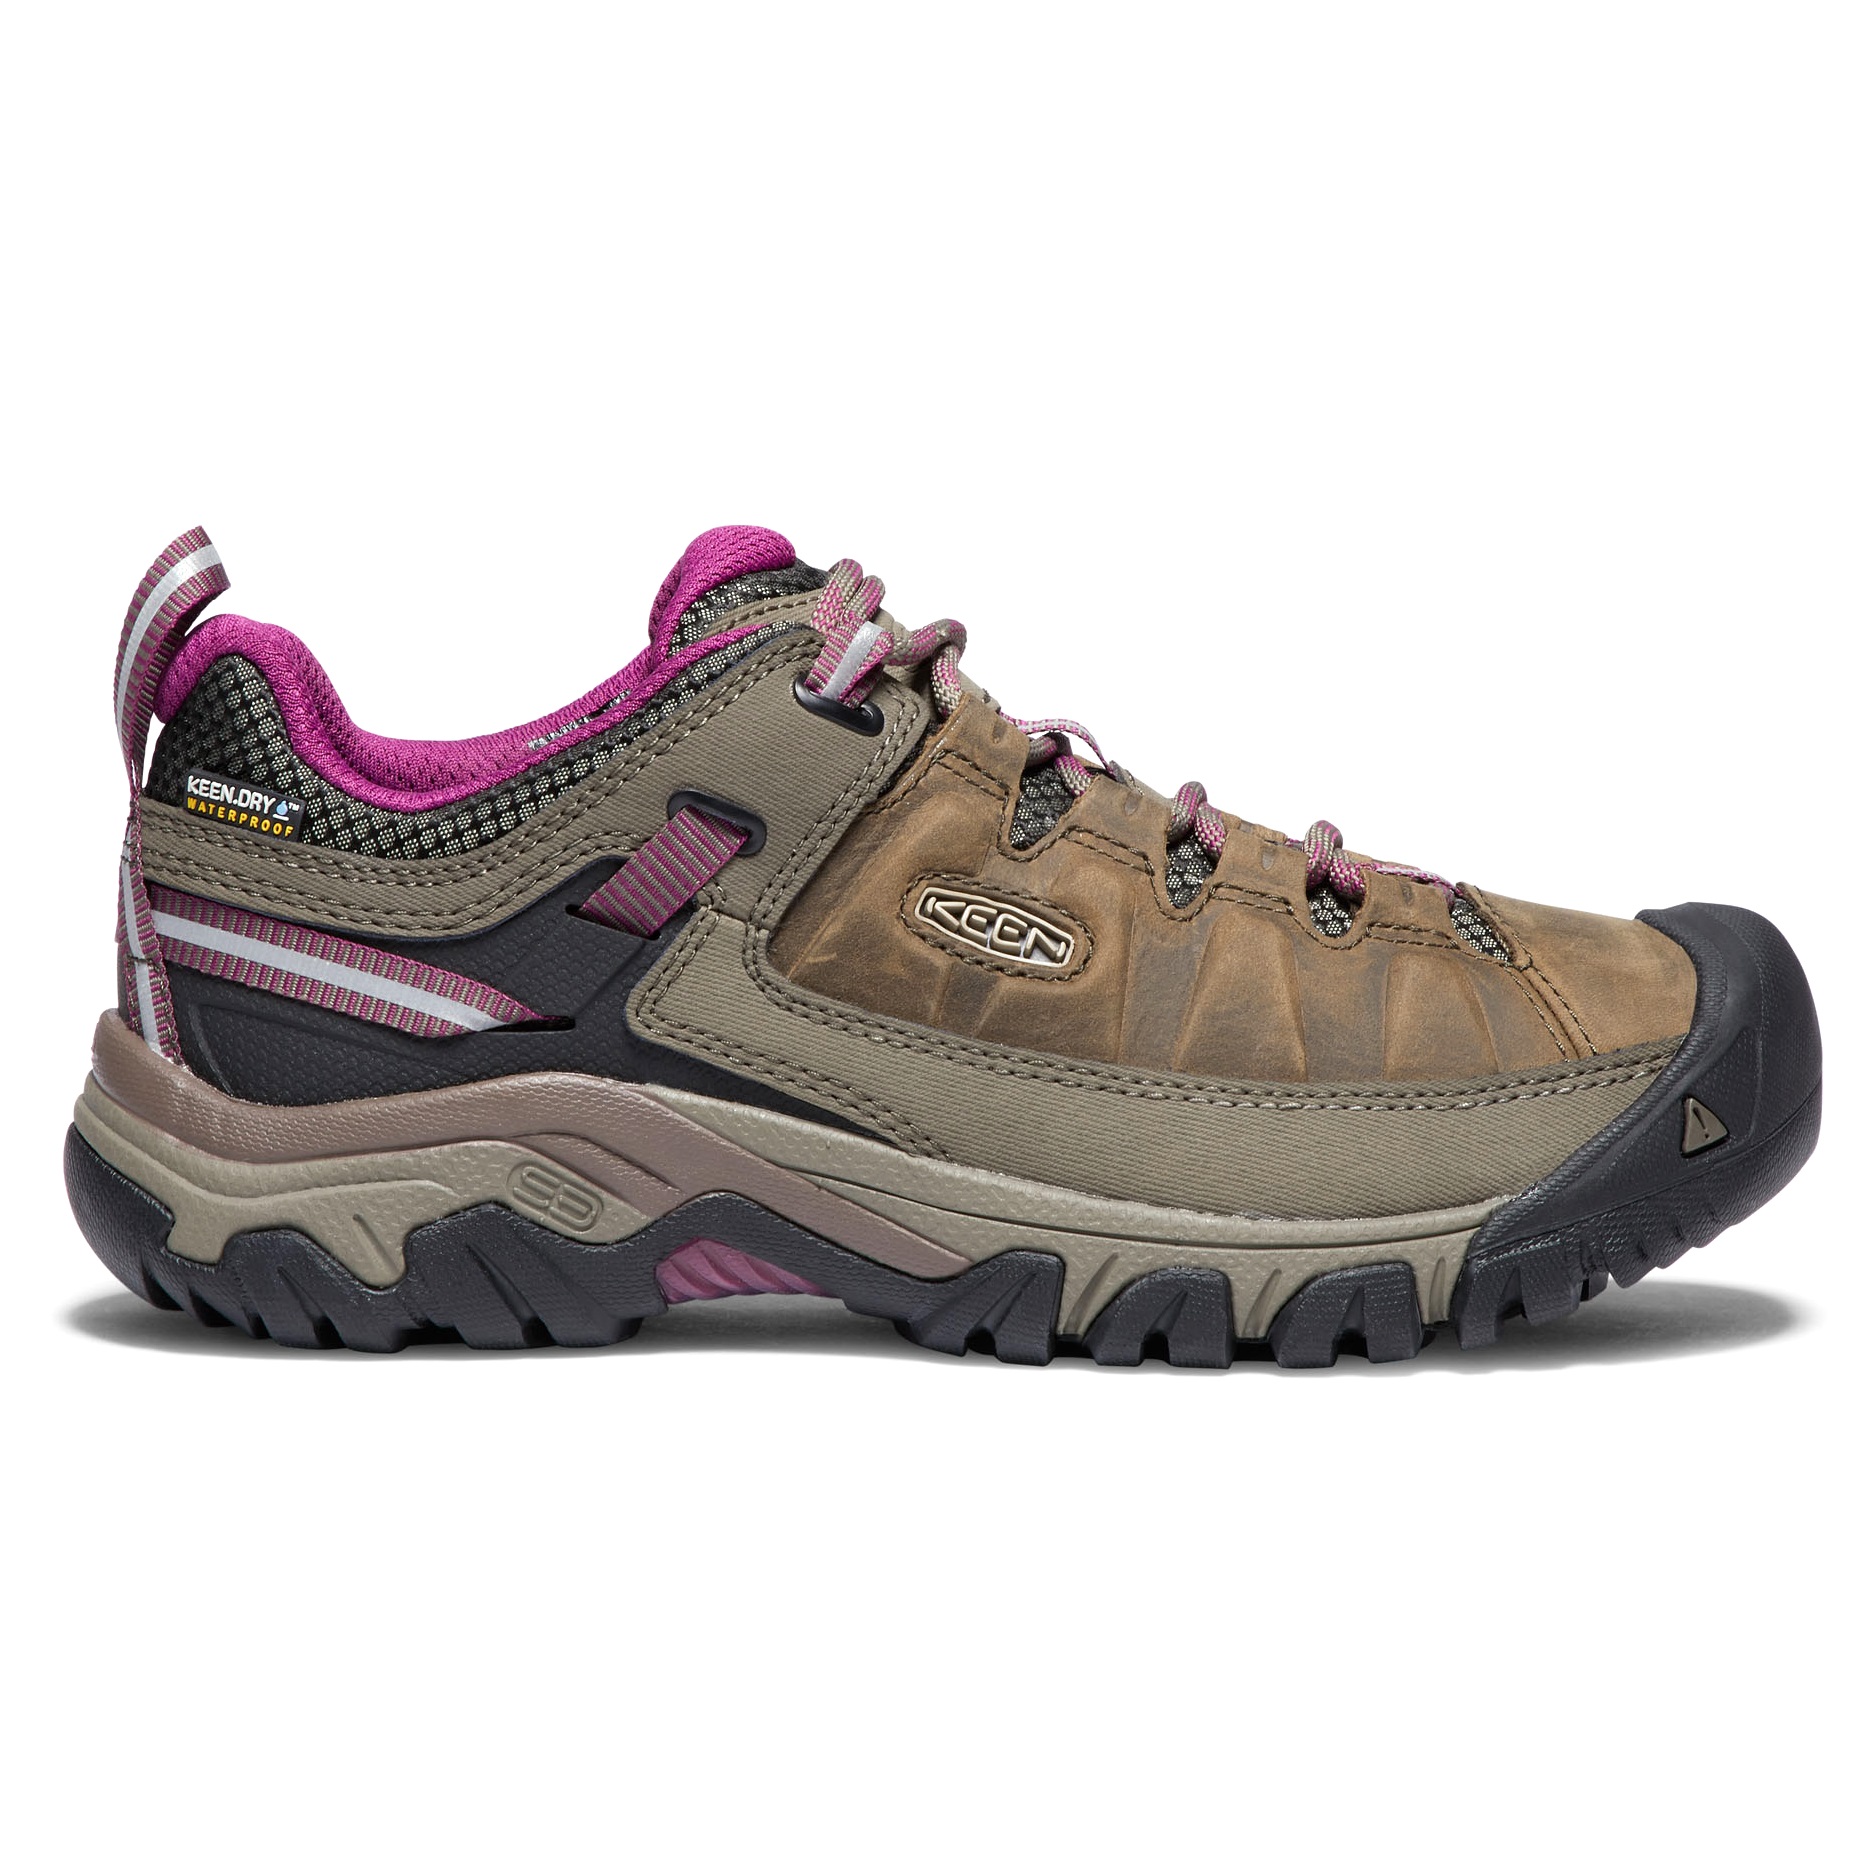 Keen Women's Targhee III Waterproof Hiking Shoes Weiss/Boysenberry 42, Weiss/Boysenberry